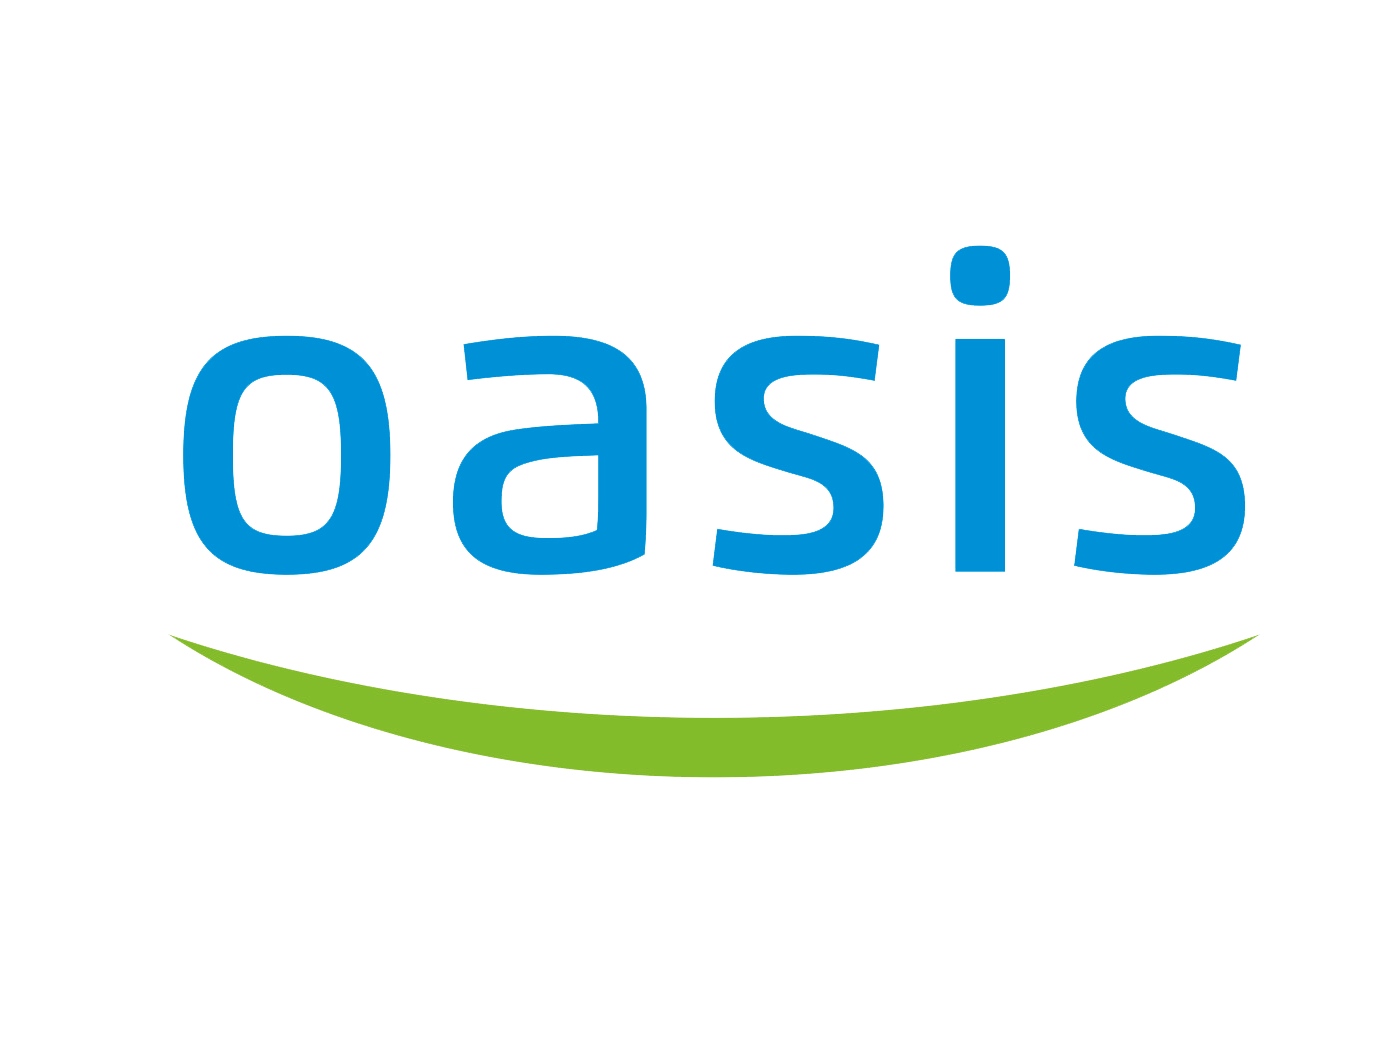 Логотип Оазис радиаторы. Oasis радиаторы логотип. Oasis логотип кондиционеры. Oasis водонагреватель logo. Форте хоум гмбх